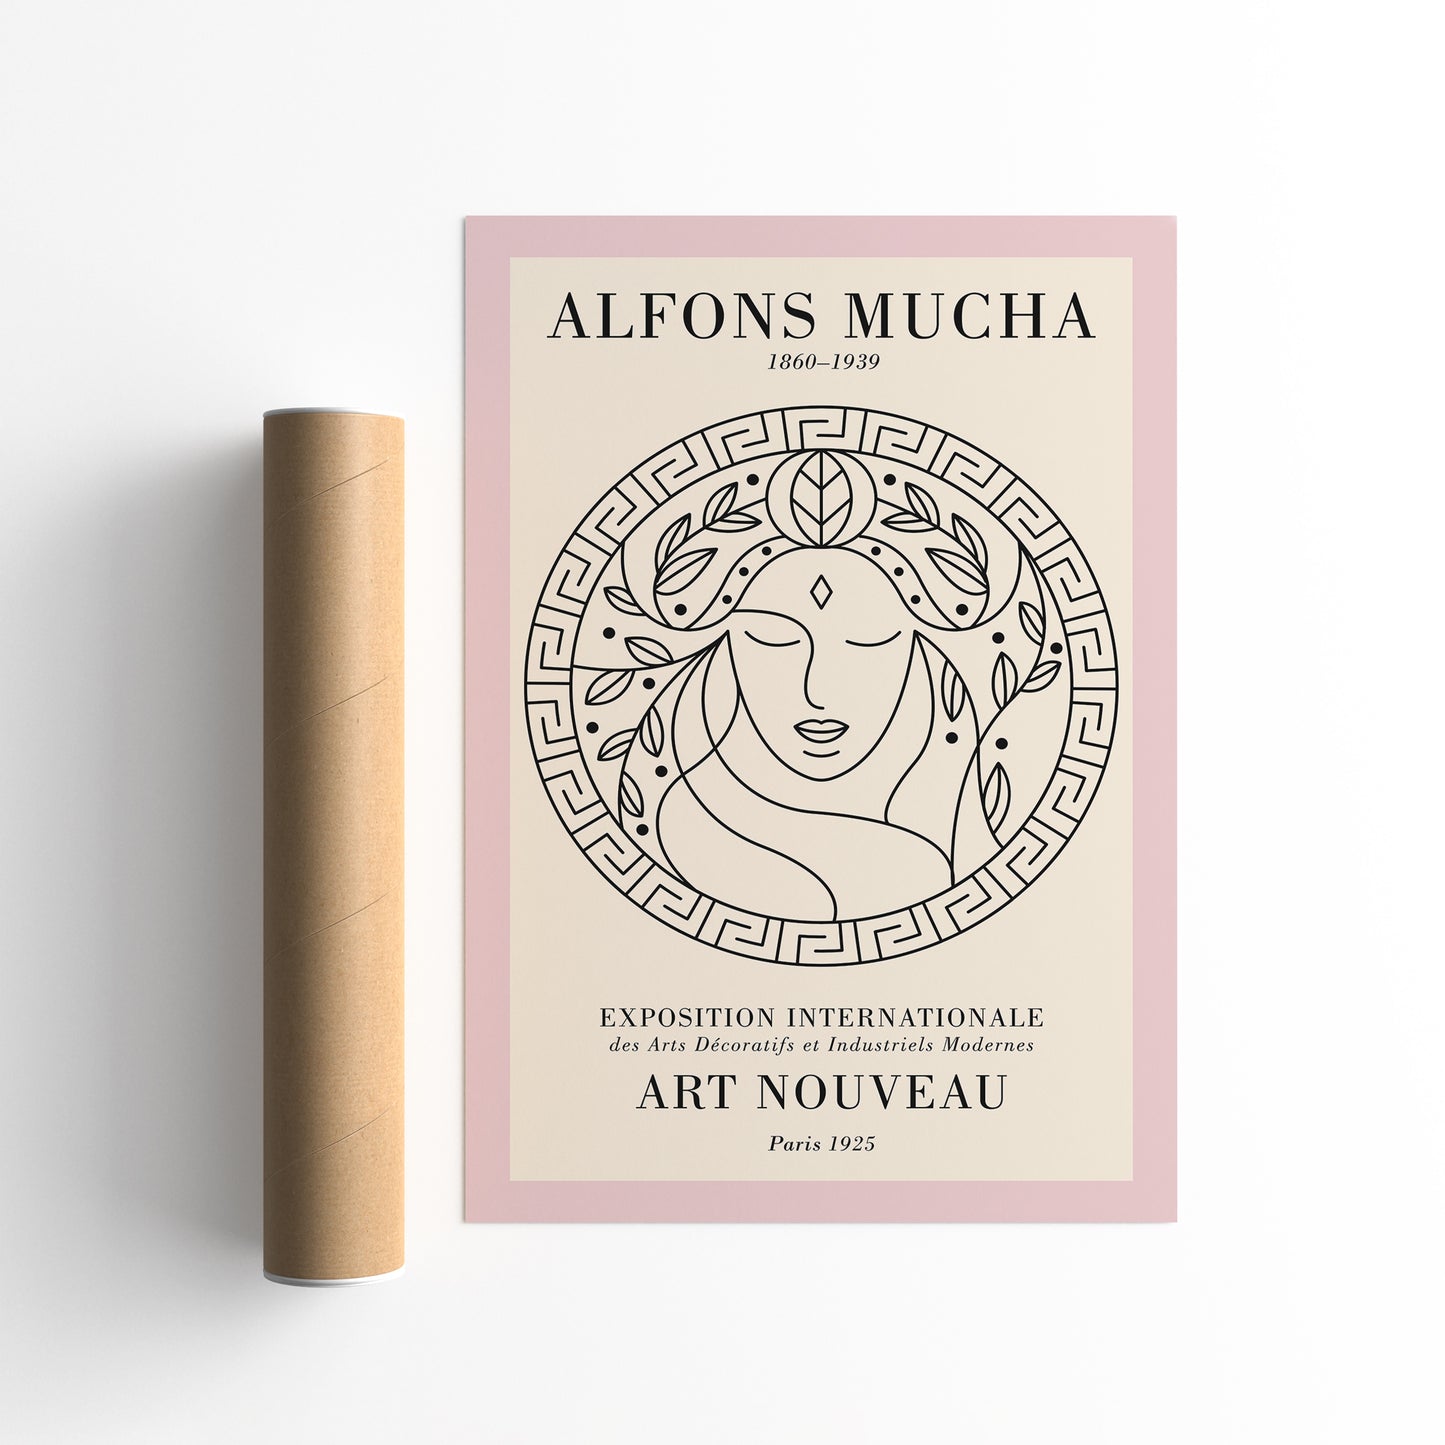 Alfons Mucha Art Nouveau Exhibition Poster